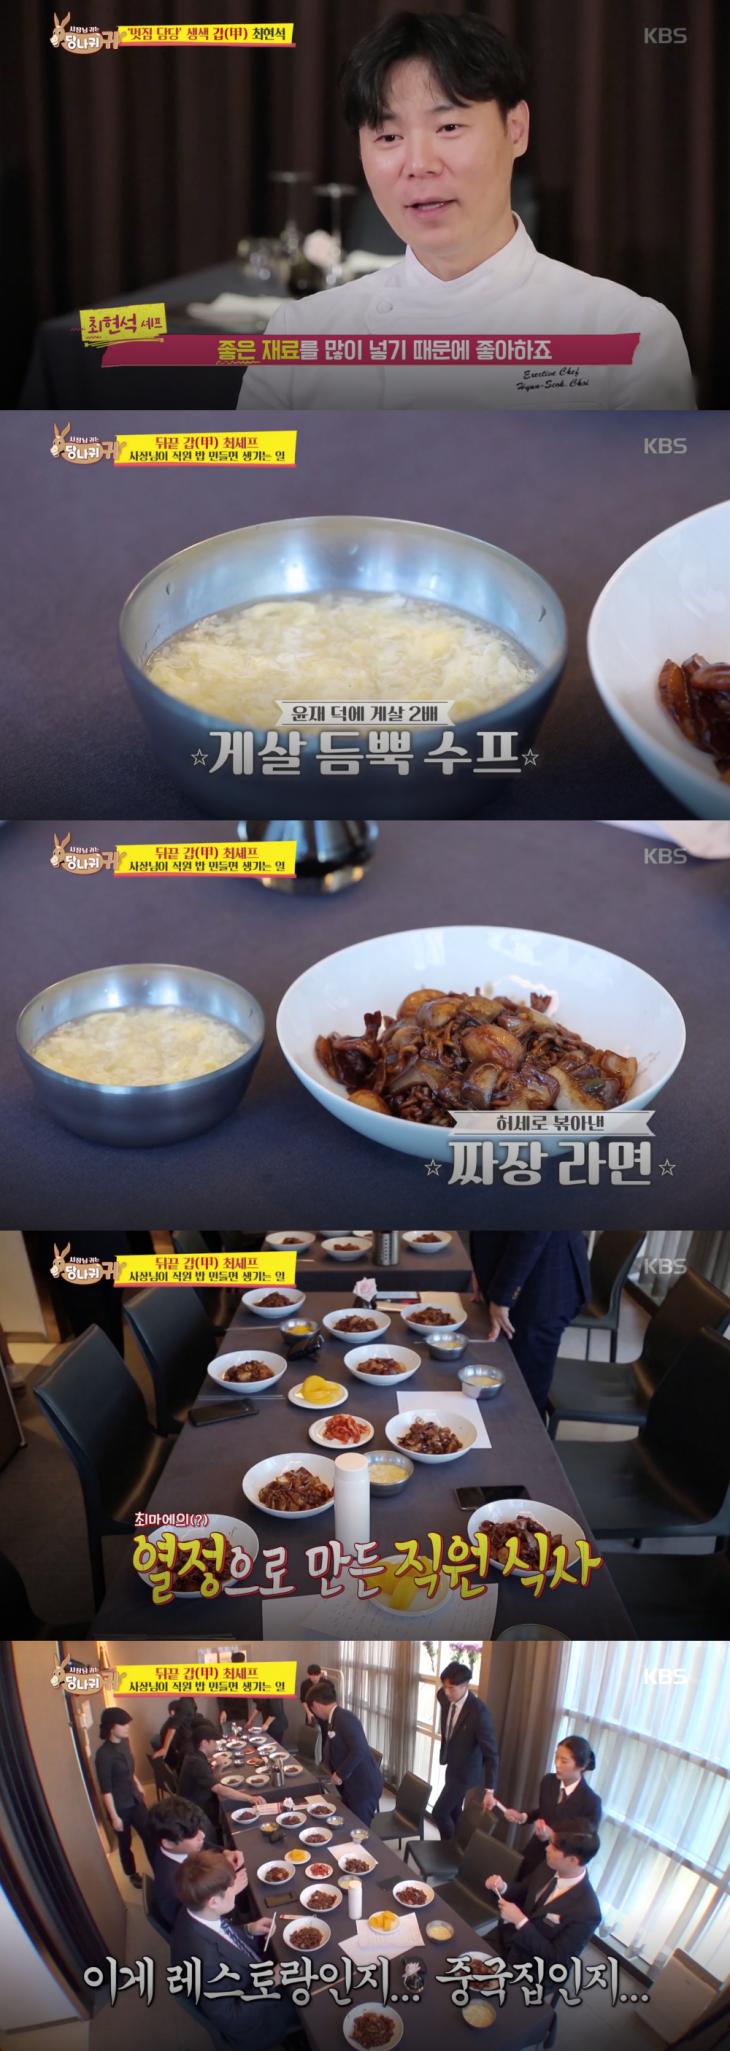 KBS2 ‘사장님 귀는 당나귀 귀’ 방송 캡처